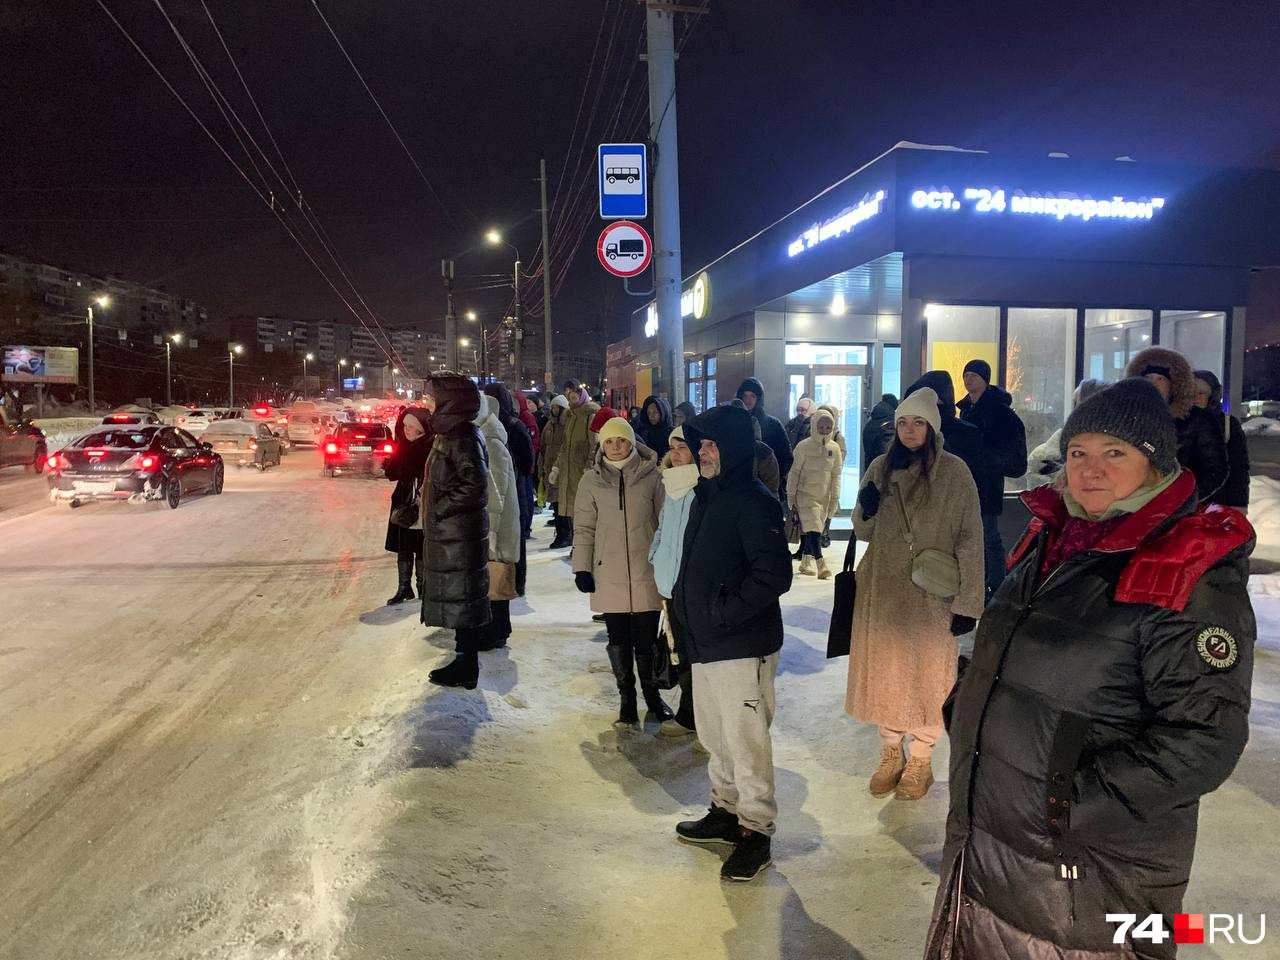 Люди стоят на снежном валу. Скатиться с него под колеса автобуса — раз плюнуть